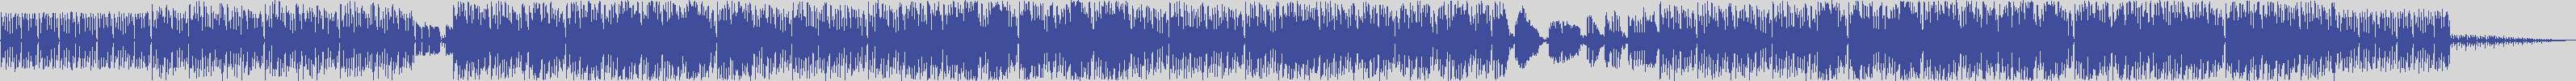 noclouds_chillout [NOC028] Control 98 - Super Sax [Original Mix] audio wave form